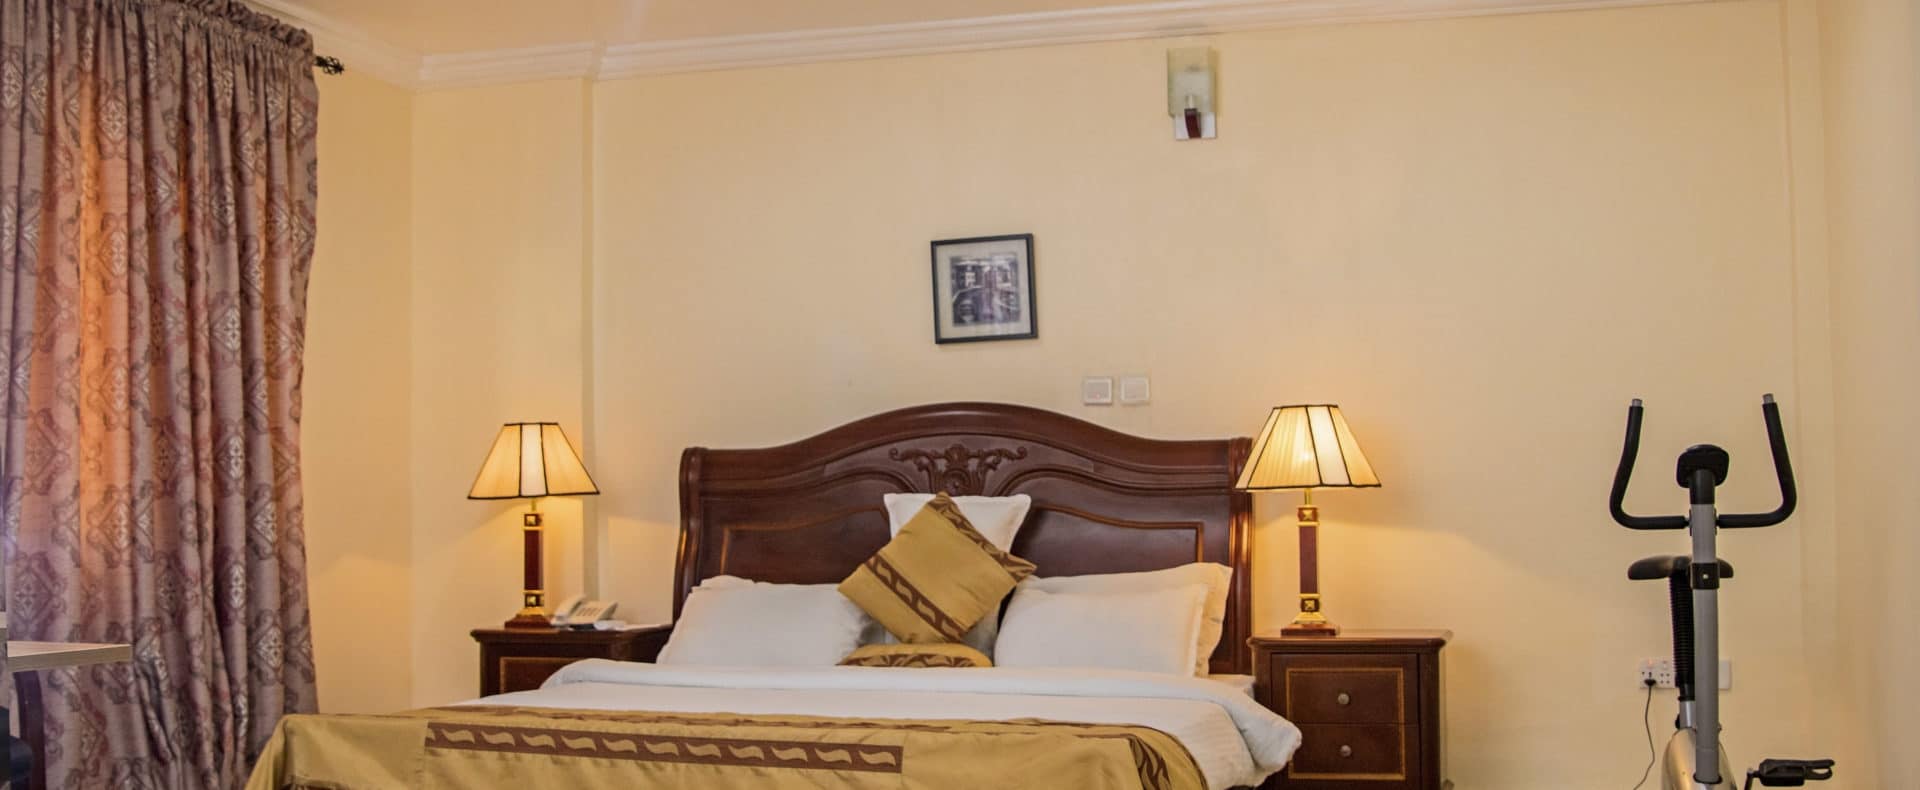 Hotel Presidential Suite In Lagos Nigeria